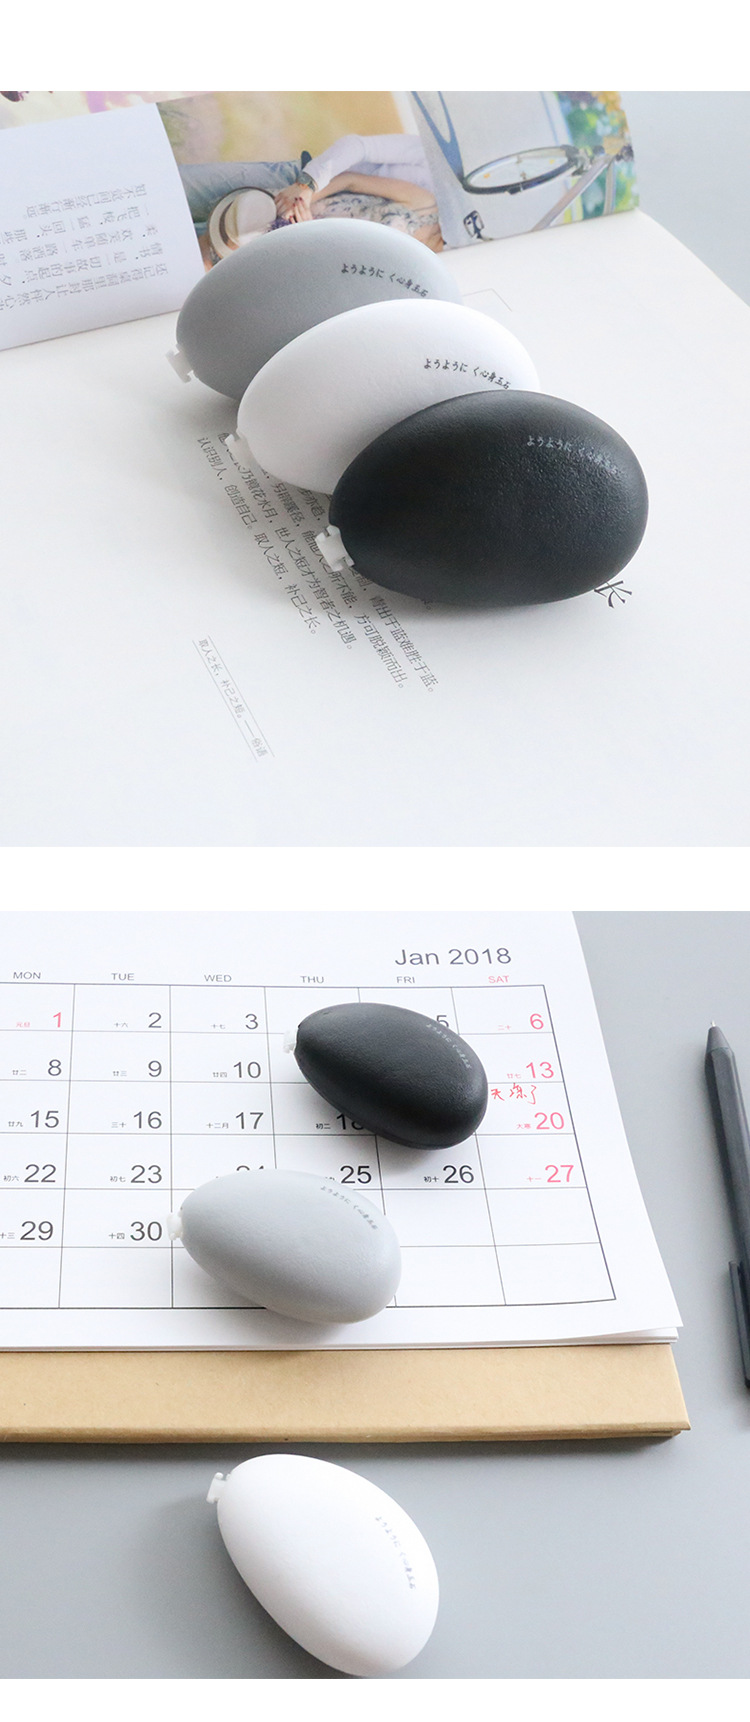 韩国创意简约迷你石头修正带纯色学生办公改错带涂改带改正带